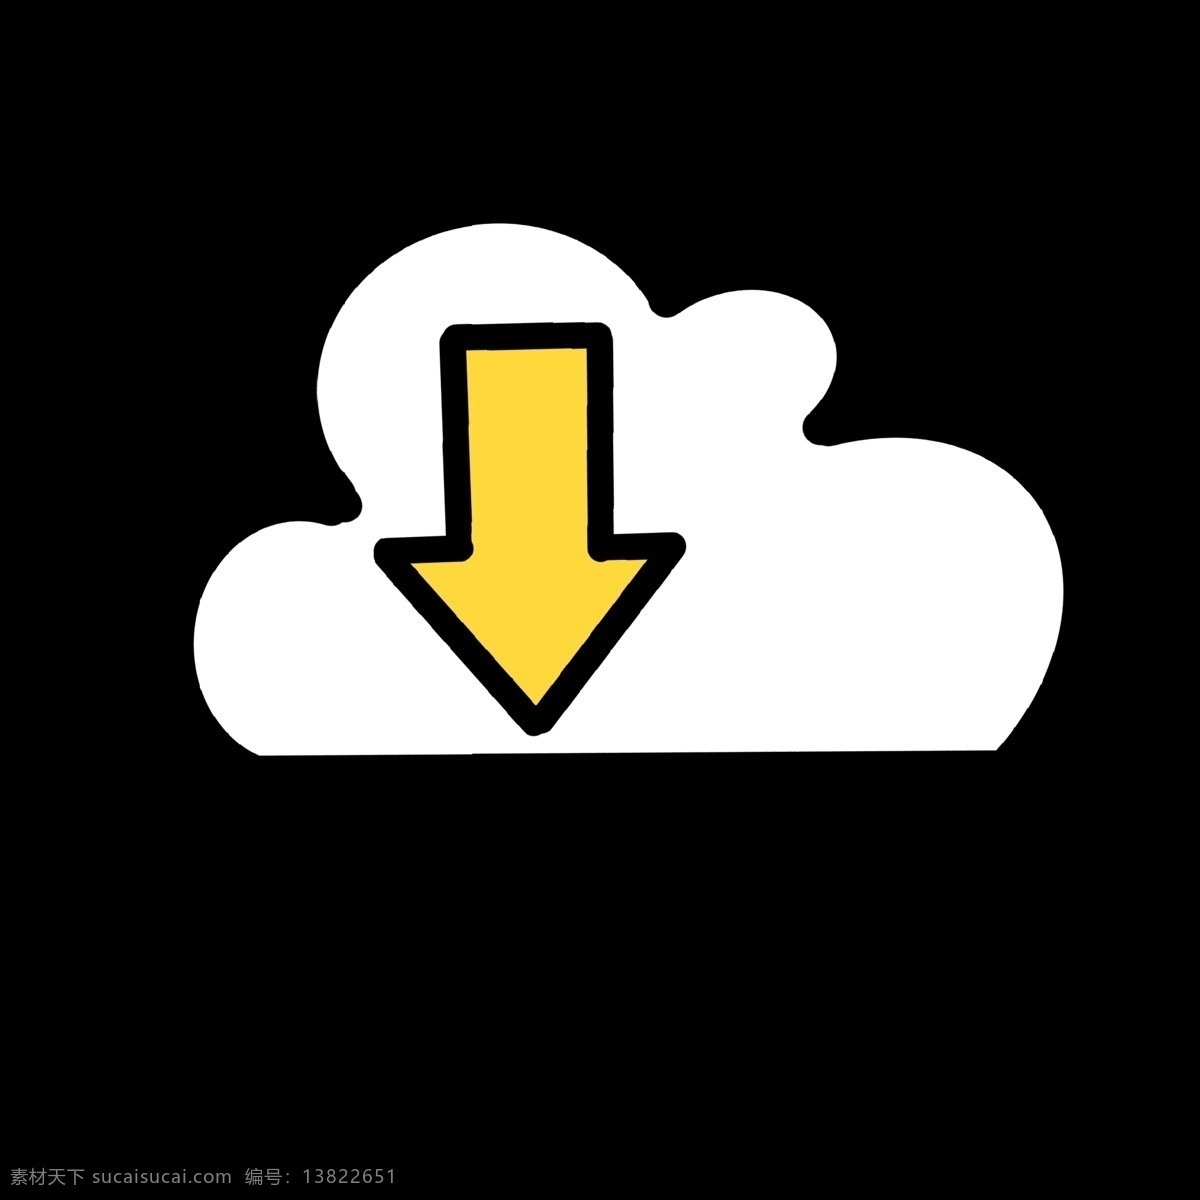 白色 云朵 状 标志 黄色 箭头 下载标志 网络 符号 信号 强弱 暗色 信号灯 网页显示 良好 互联网标志 简约 简洁 卡通